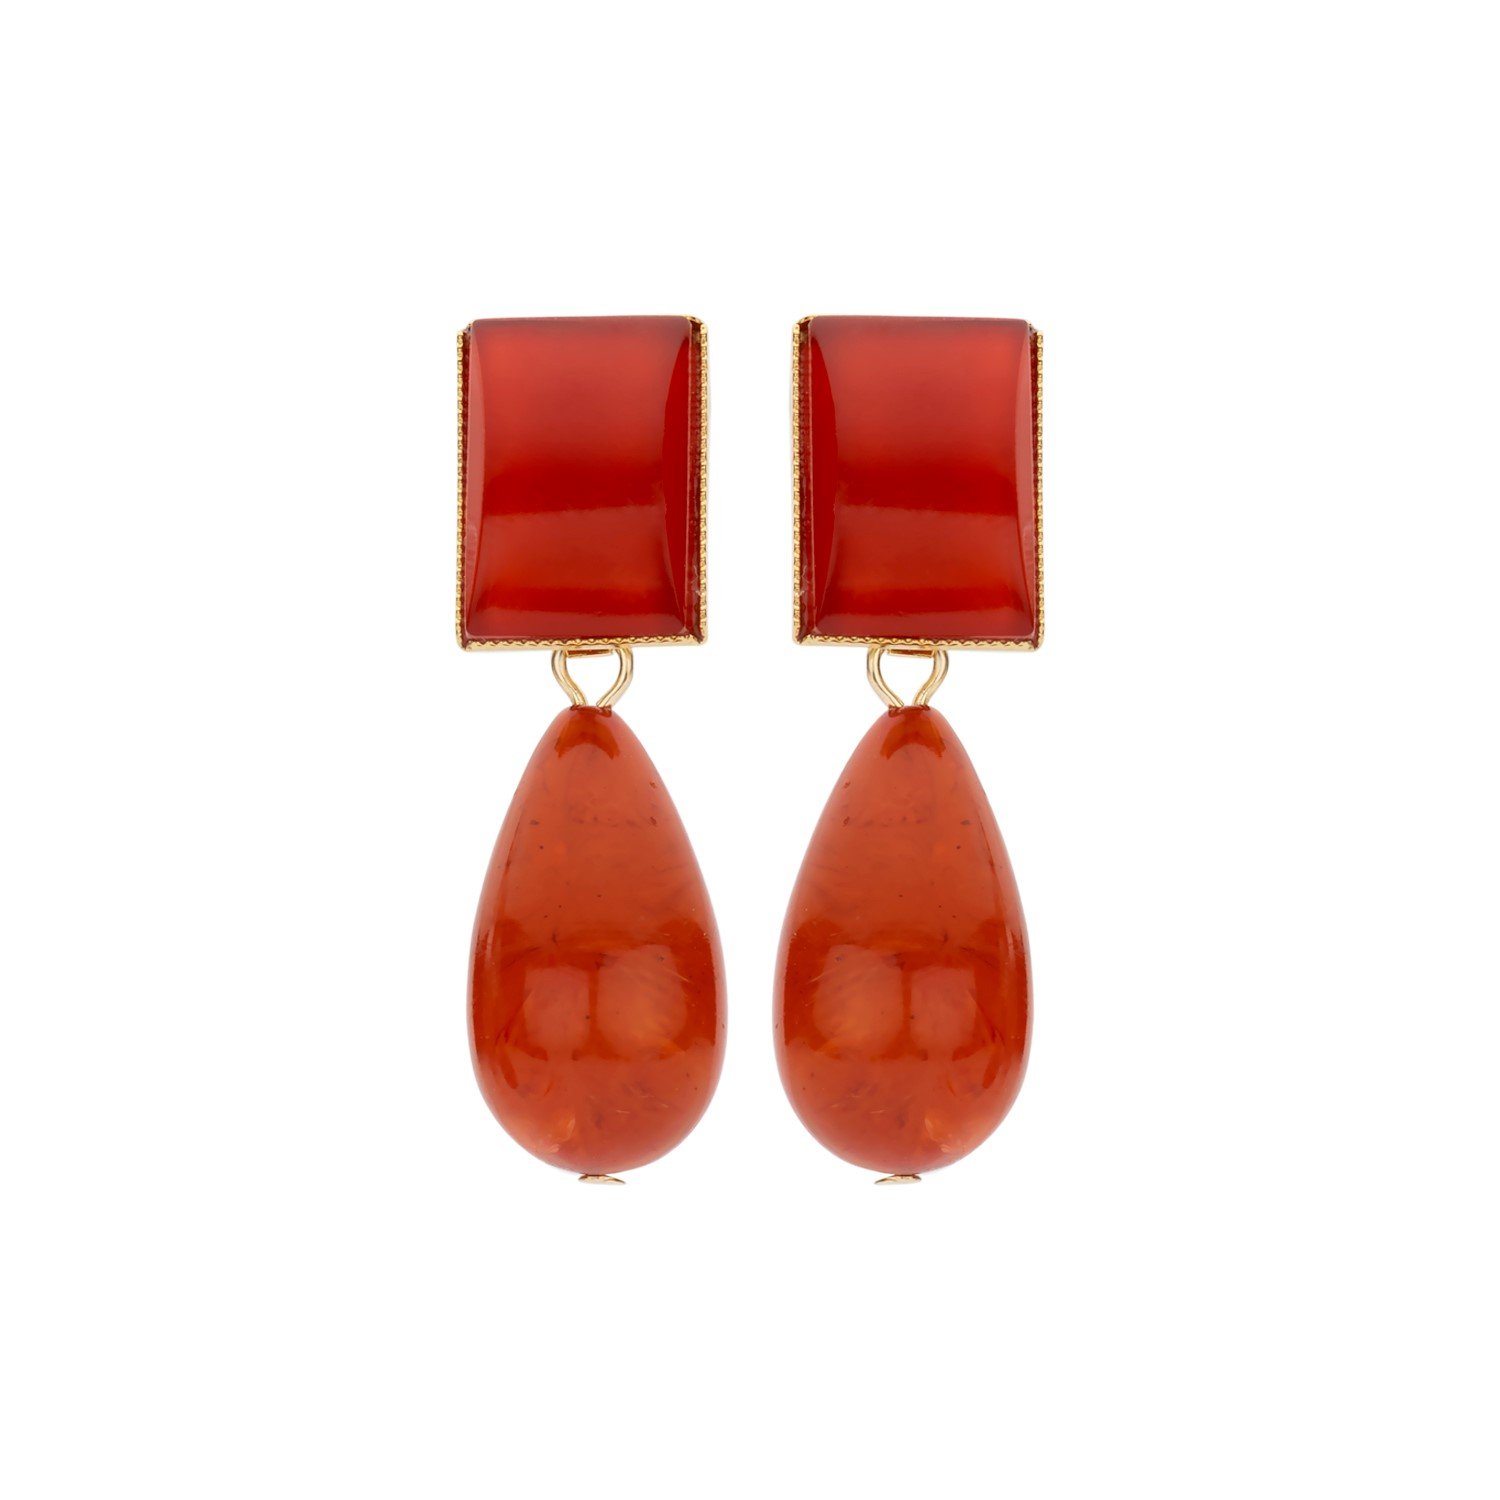 New Playa red terracota earrings - Souvenirs de Pomme